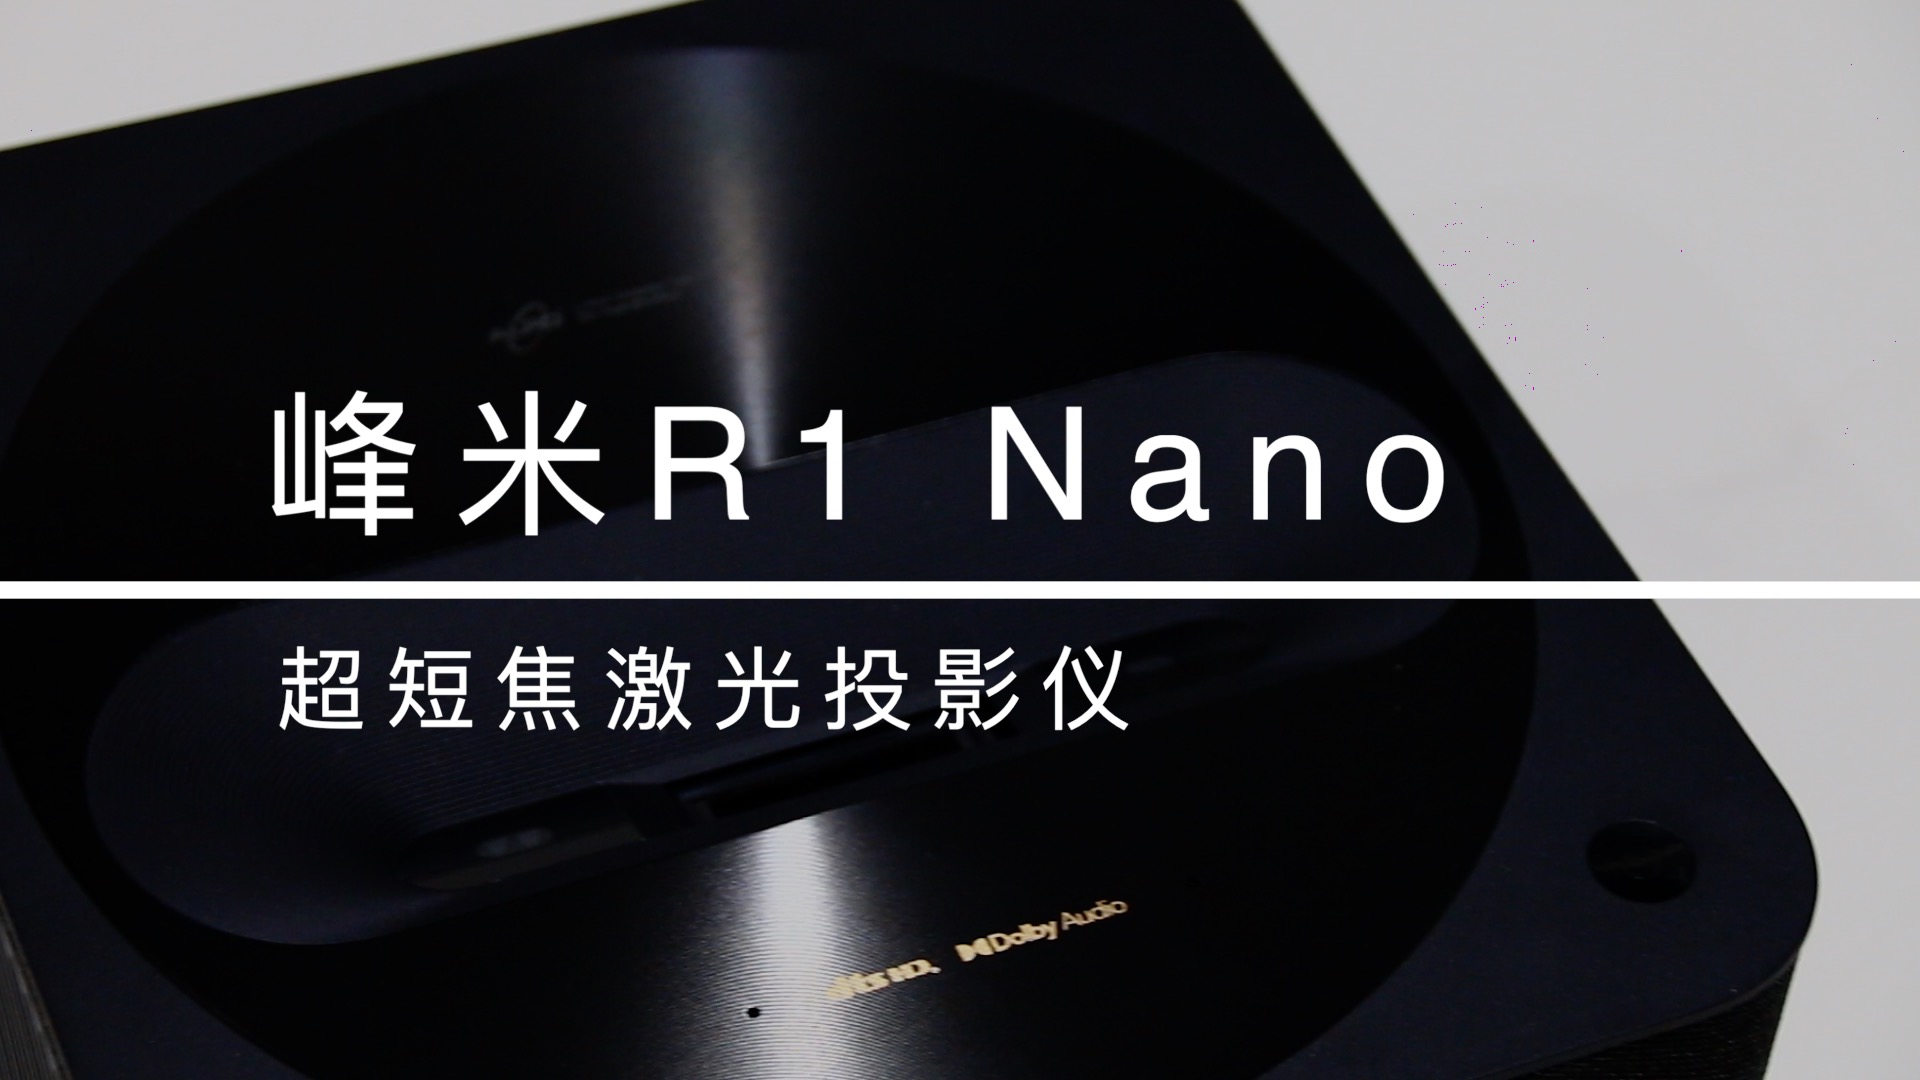 随时随地独享私人影院 峰米R1 Nano超短焦激光投影仪评测 智能公会